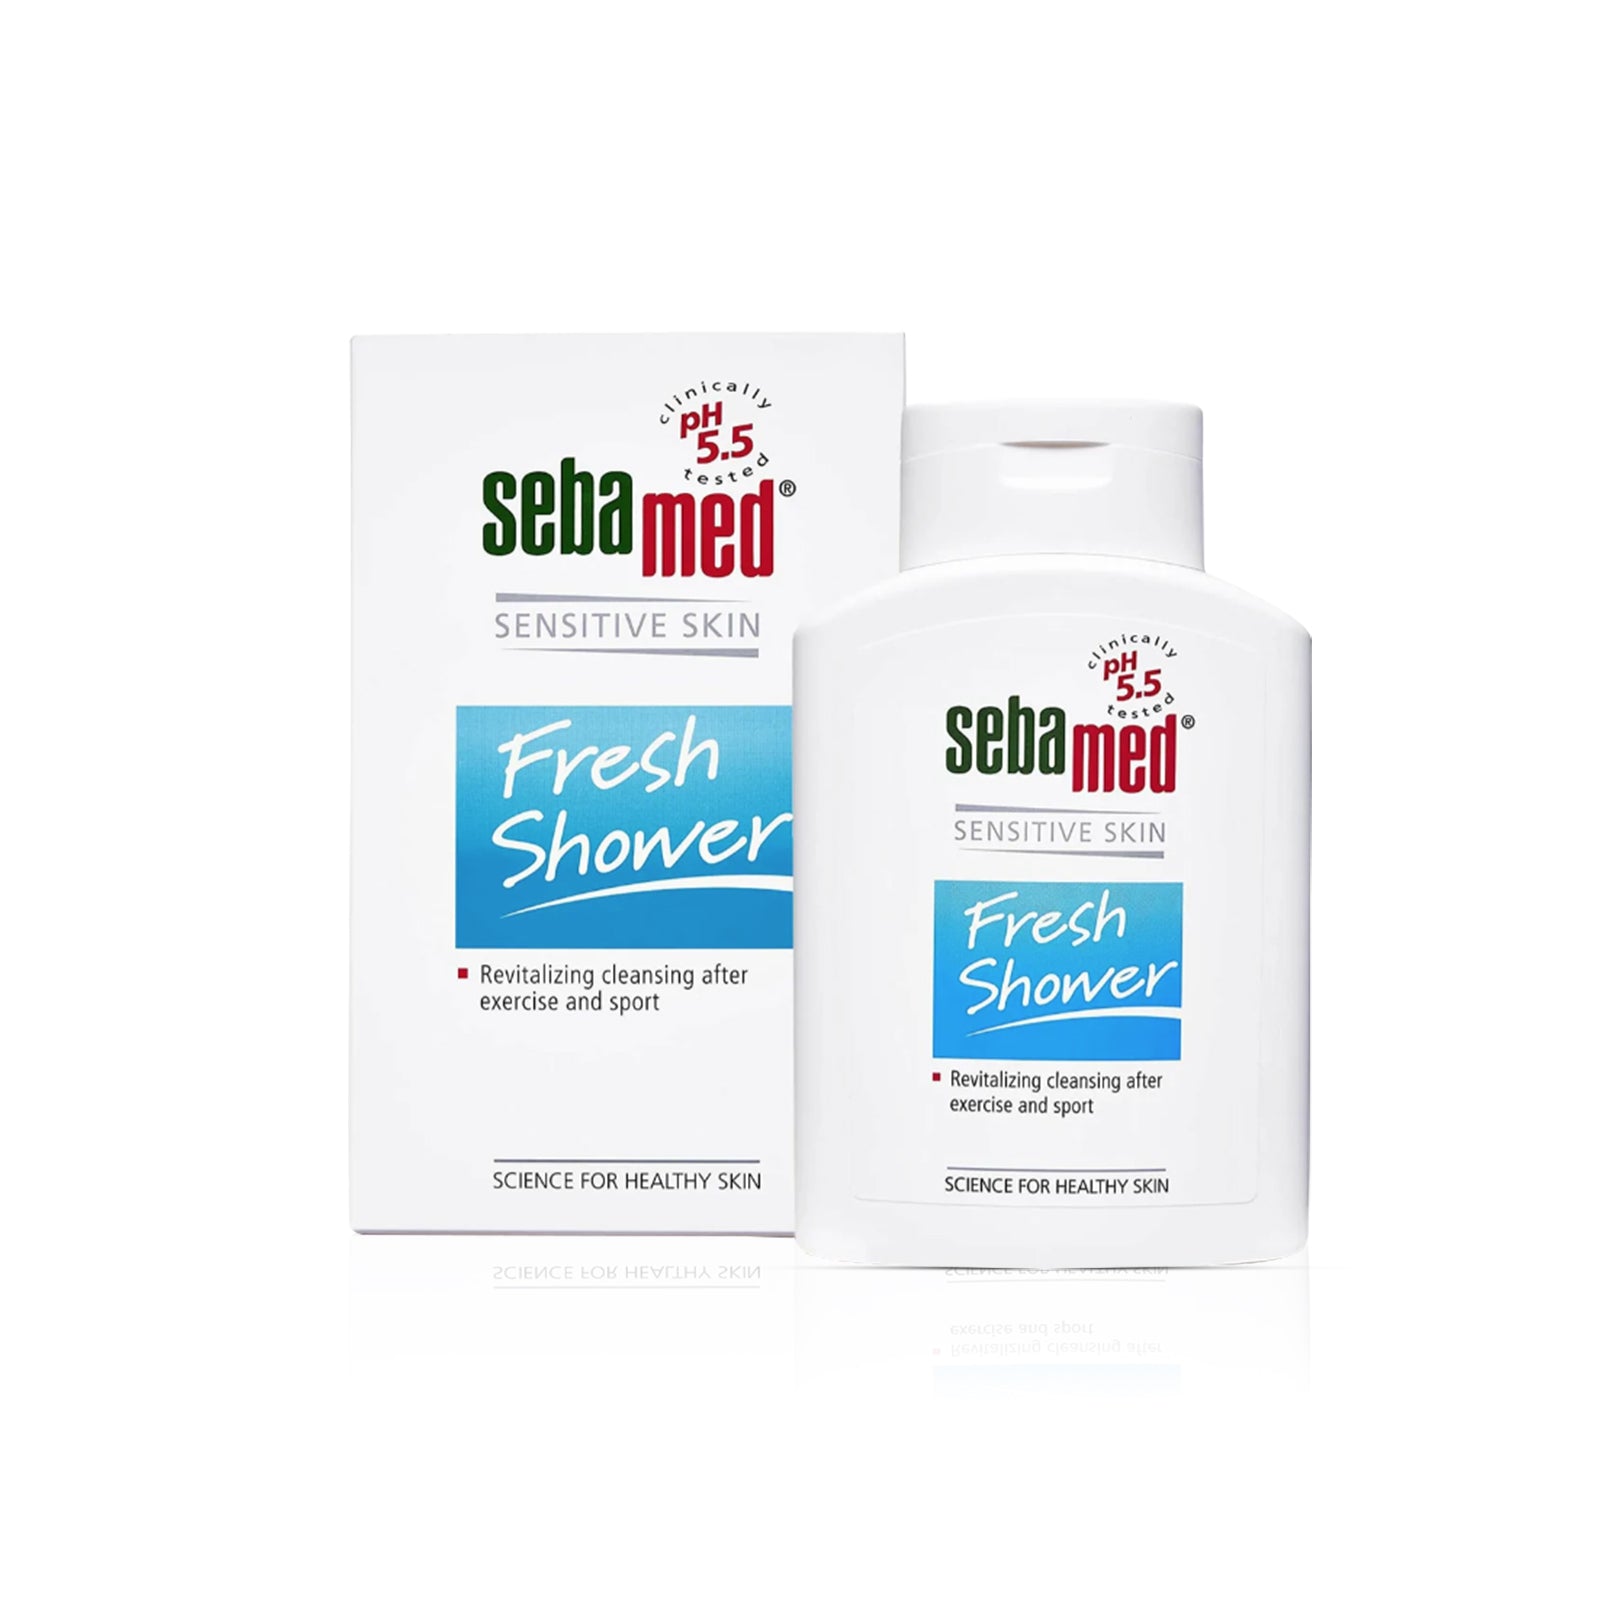 Sebamed Sensitive Skin Fresh Shower